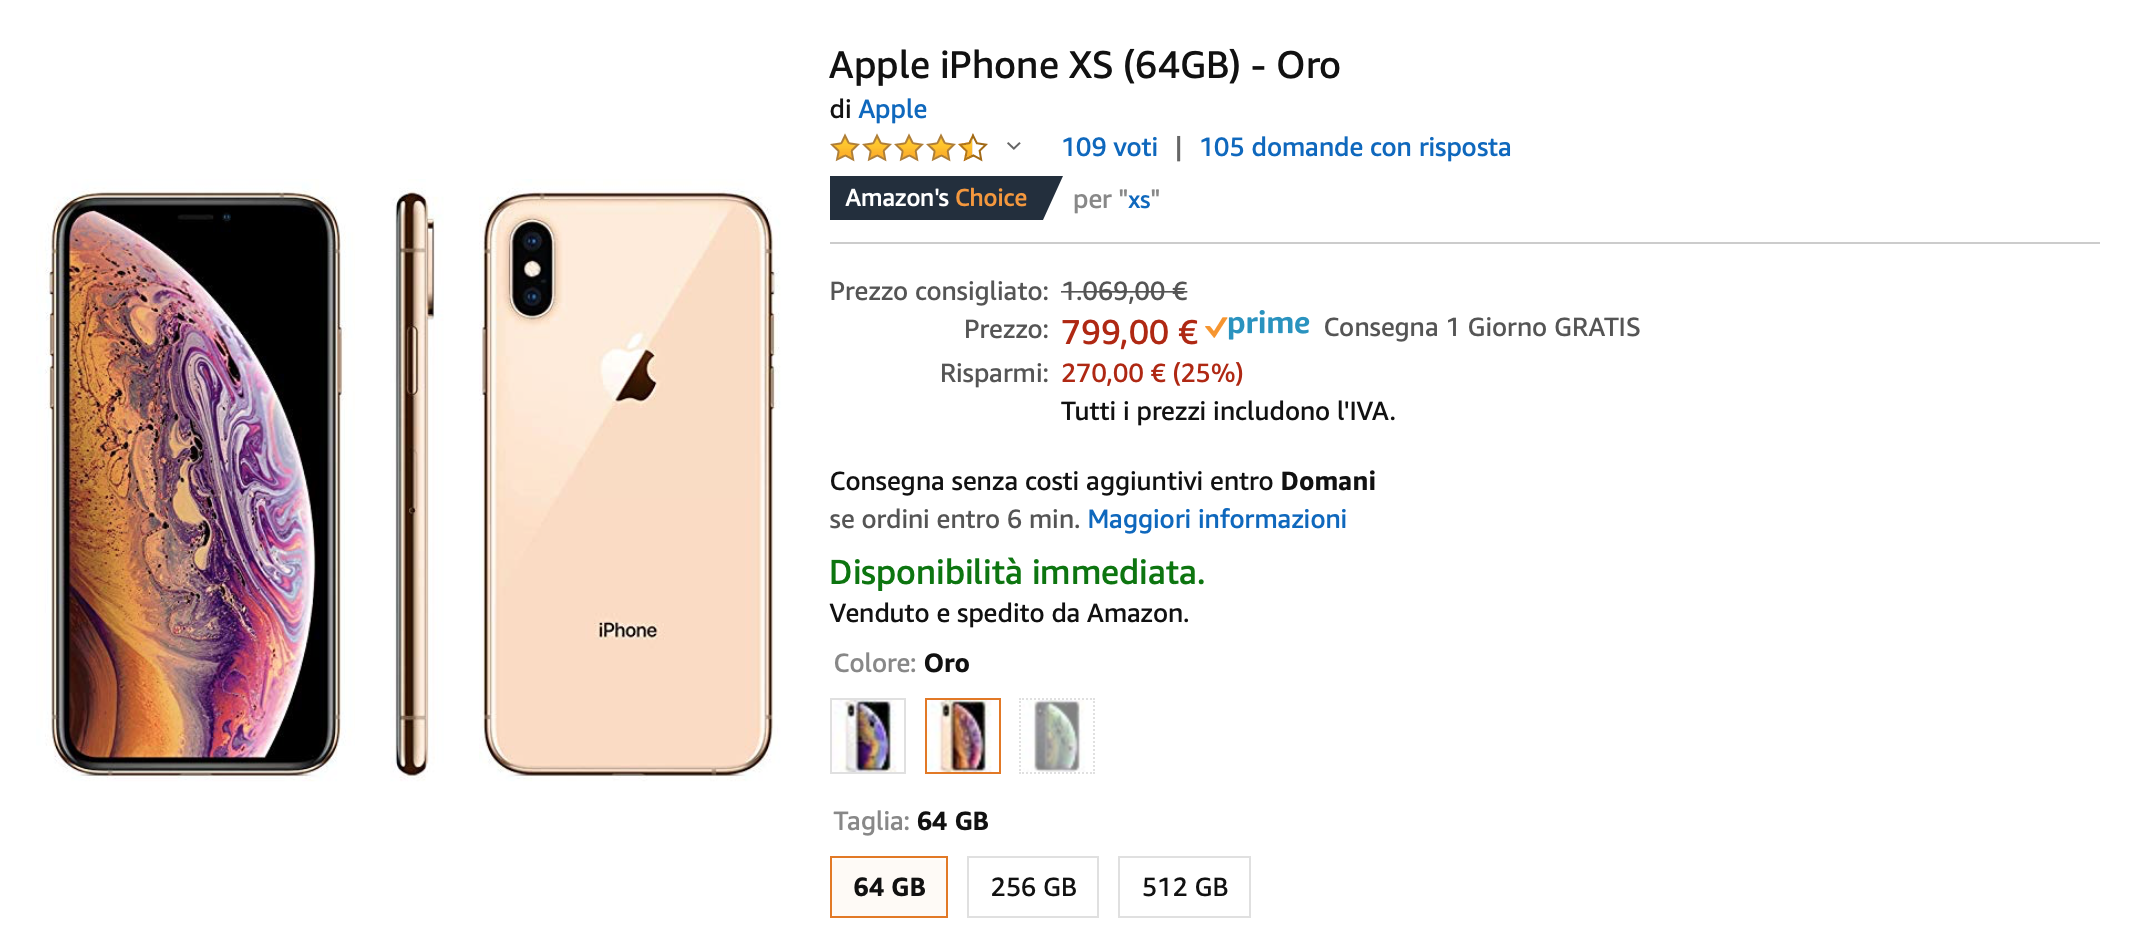 Su Amazon iPhone XS 64 GB scontato del 25%: solo 799 euro